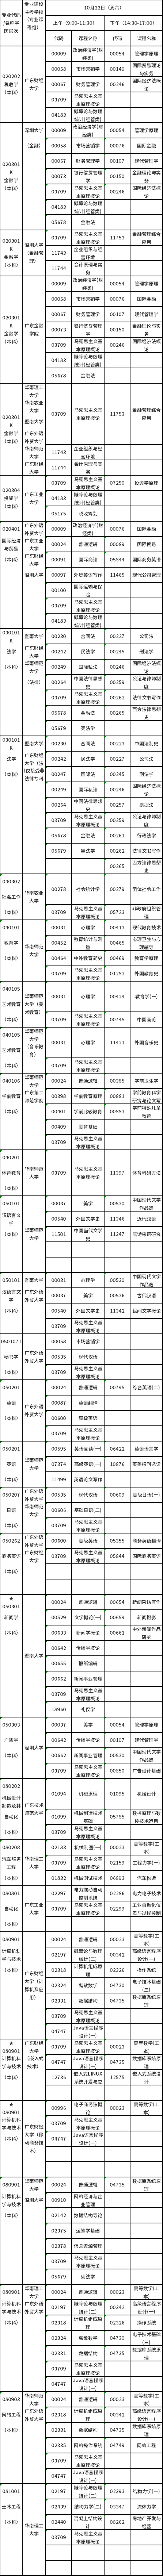 广东2022年10月22日自考(本科)专业及考试科目一览表